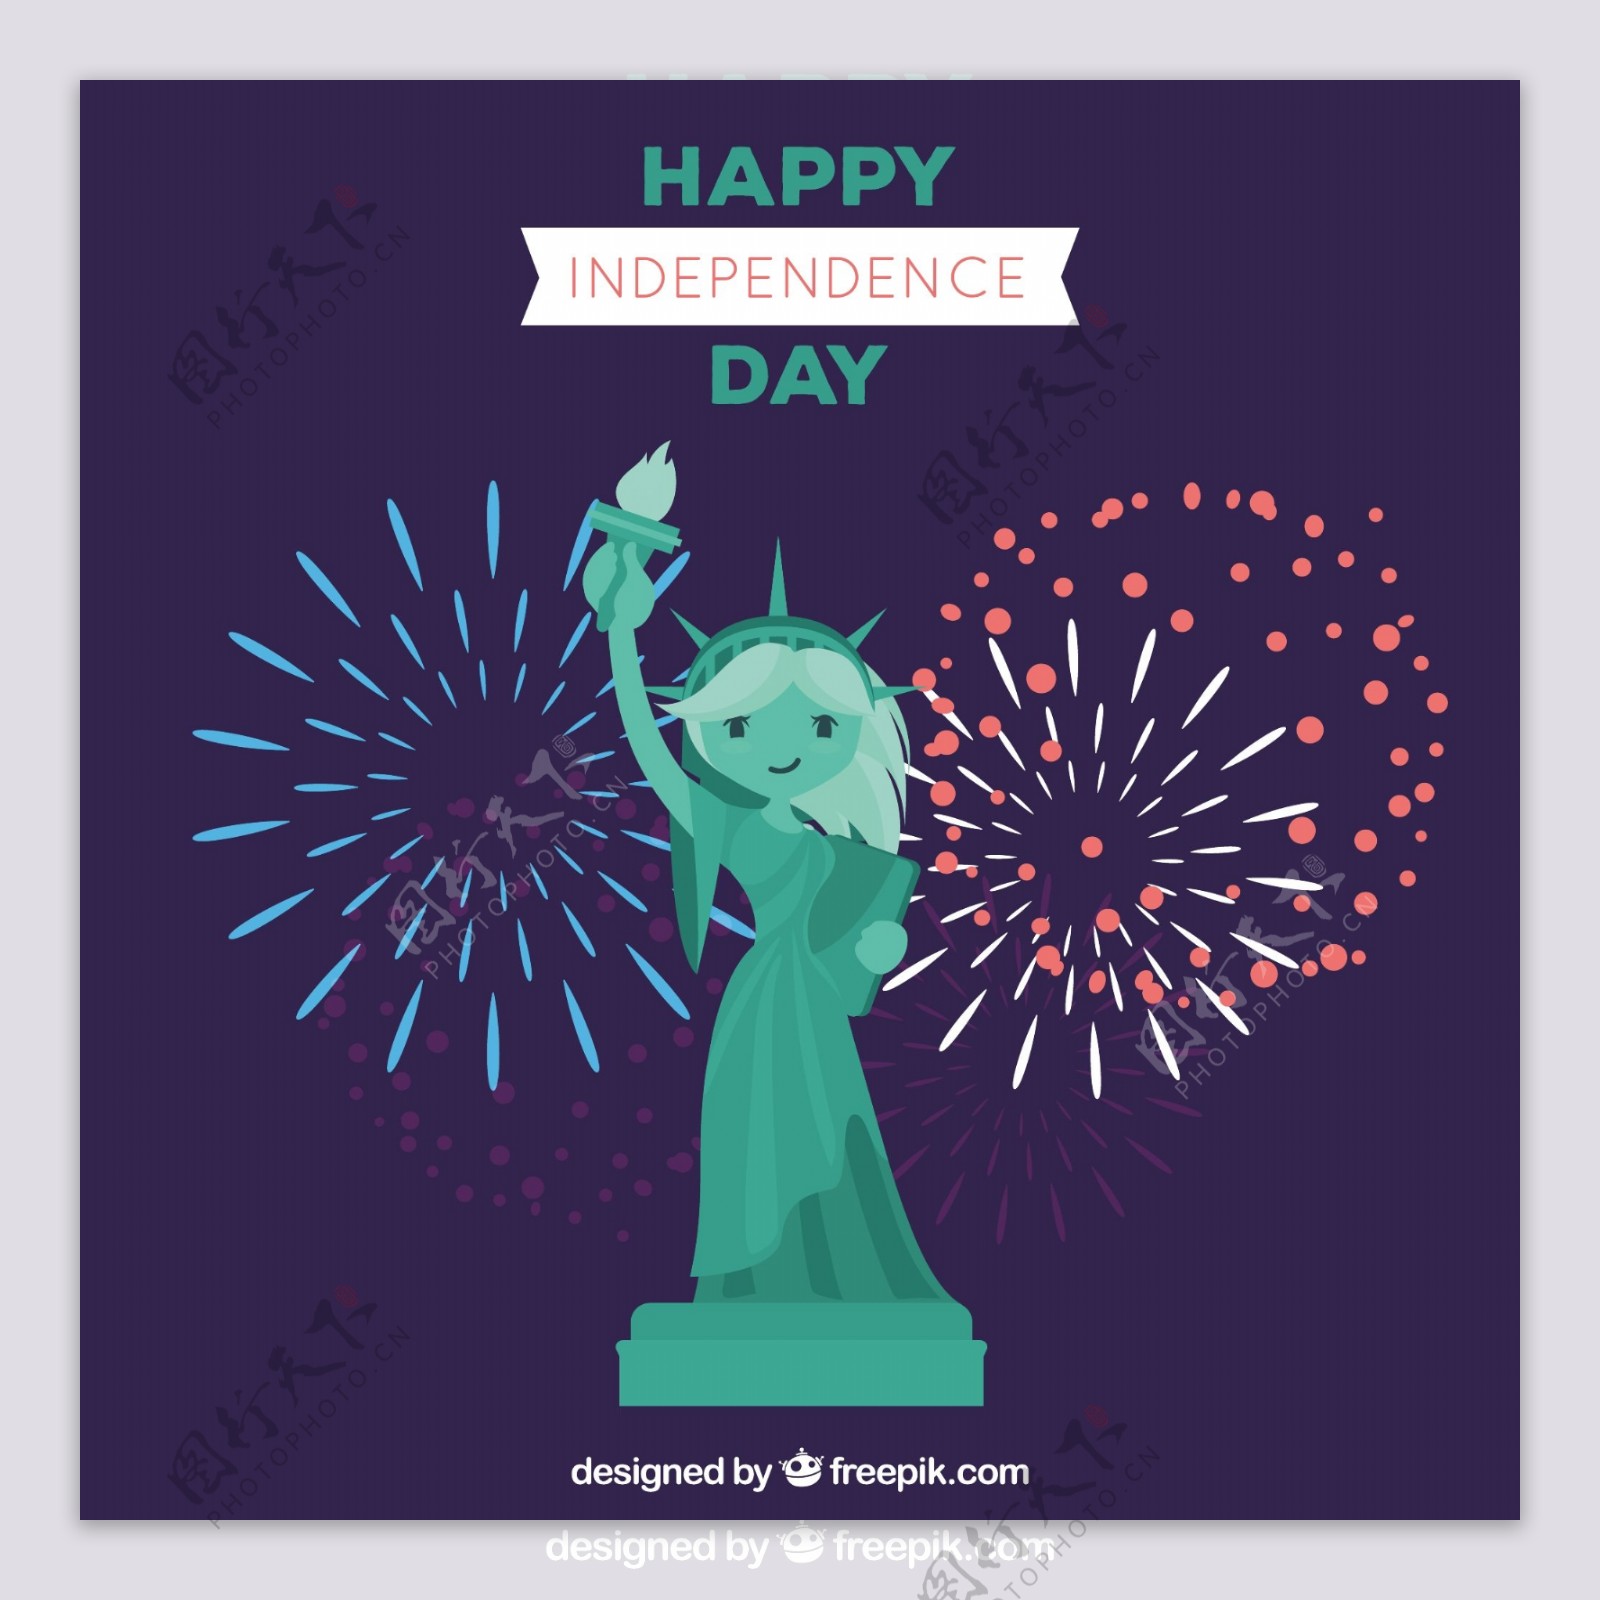 美国独立日自由女神像烟花背景